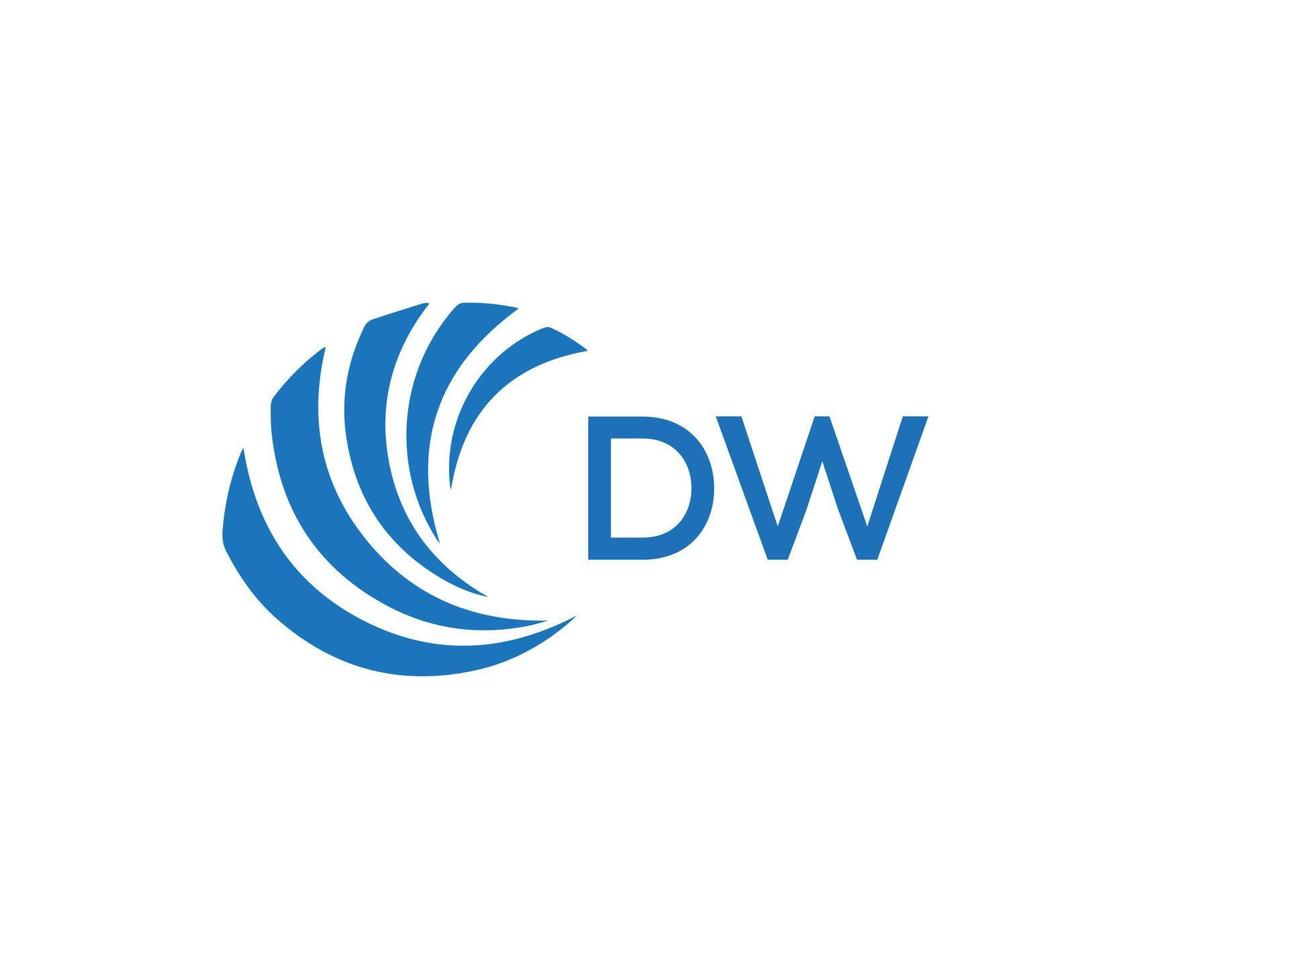 DW letter logo design on white background. DW creative circle letter logo concept. DW letter design. vector